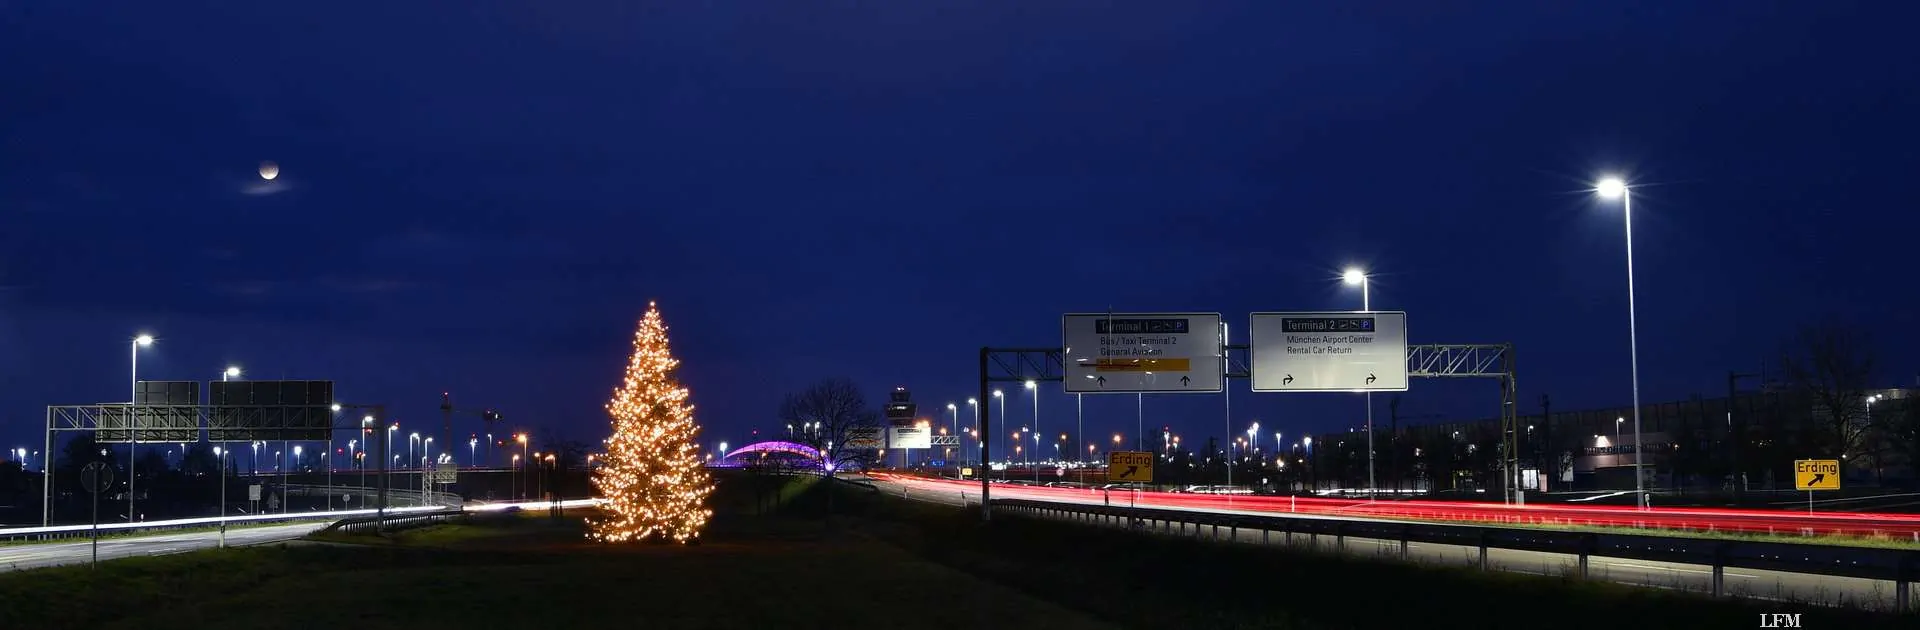 Weihnachtsbaum am Flughafen München